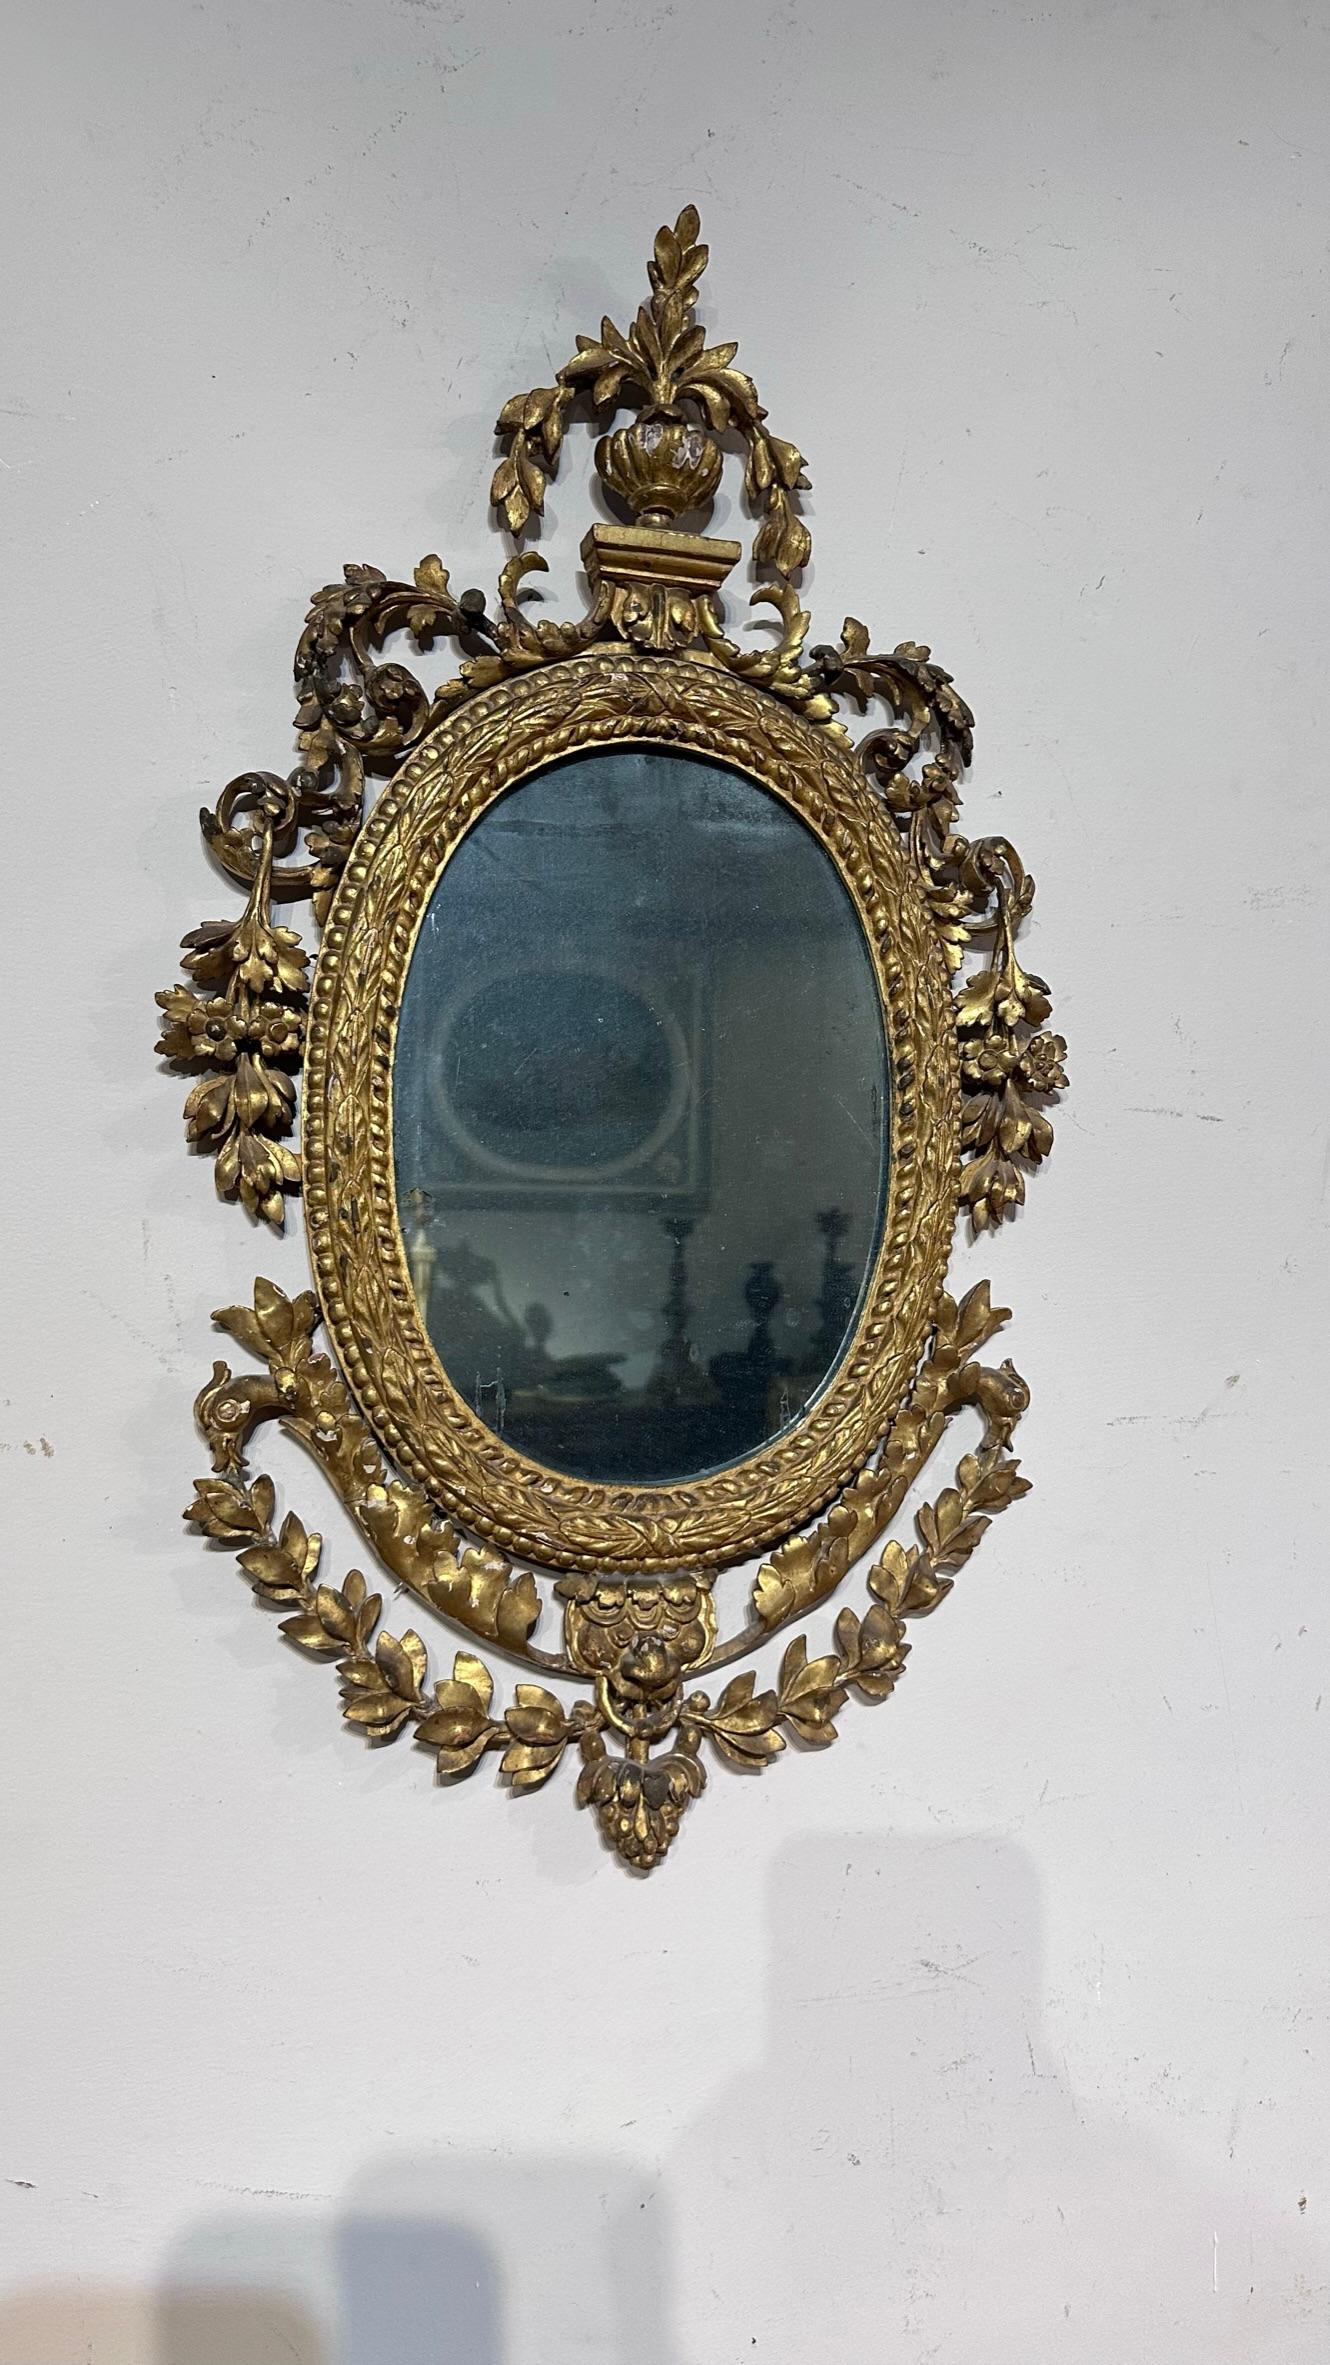 Miroir ovale en bois de pin finement sculpté et doré à la feuille d'or avec lumière au mercure d'origine. Fabrication italienne typique dans le style Louis XVI de la fin des années 1700.

Dimensions HxLxP 64 x 35 x 3,5cm